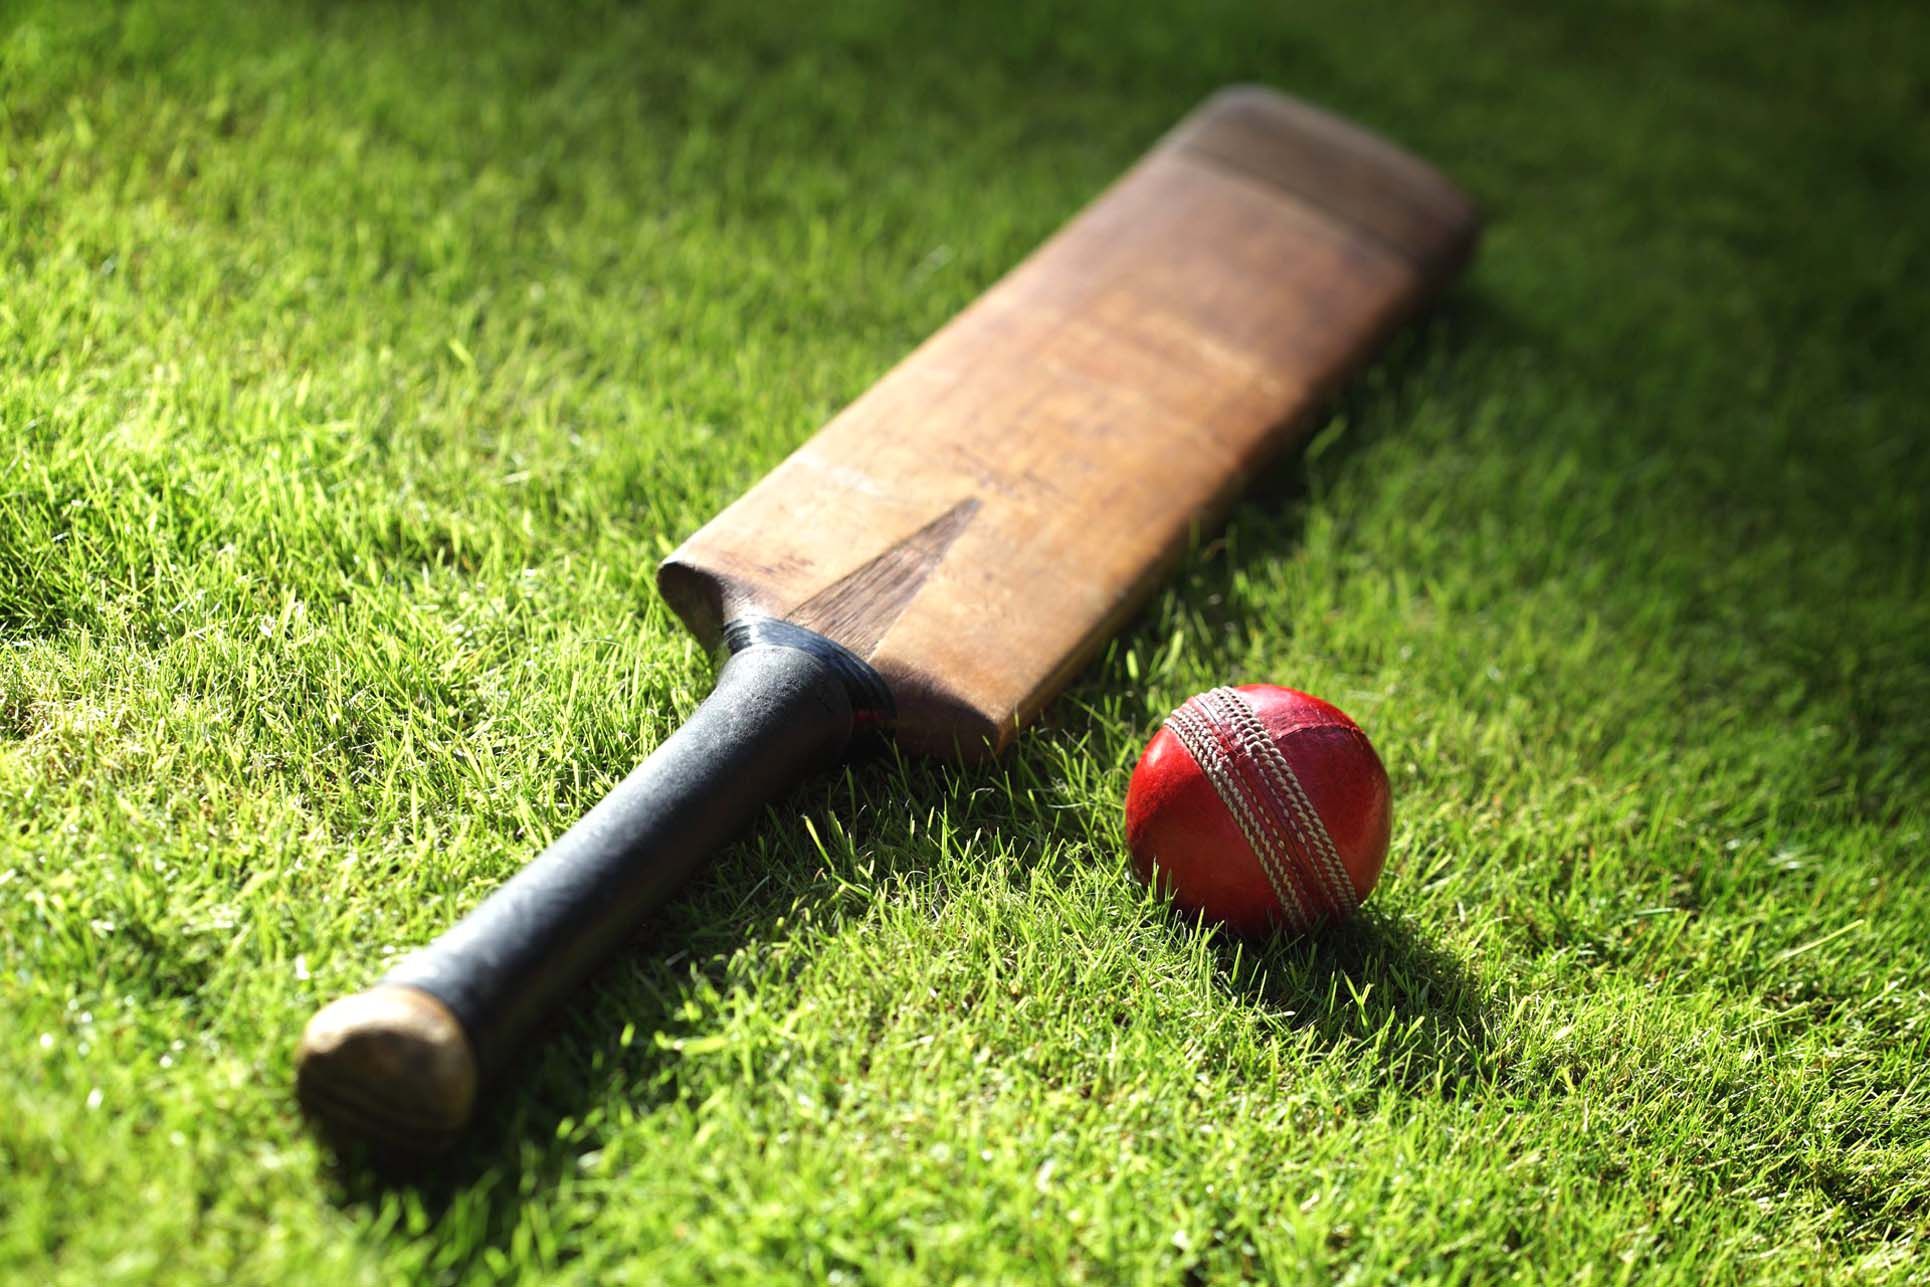 तनहुँमा प्रदेशस्तरीय क्रिकेट मैदान बनाइने